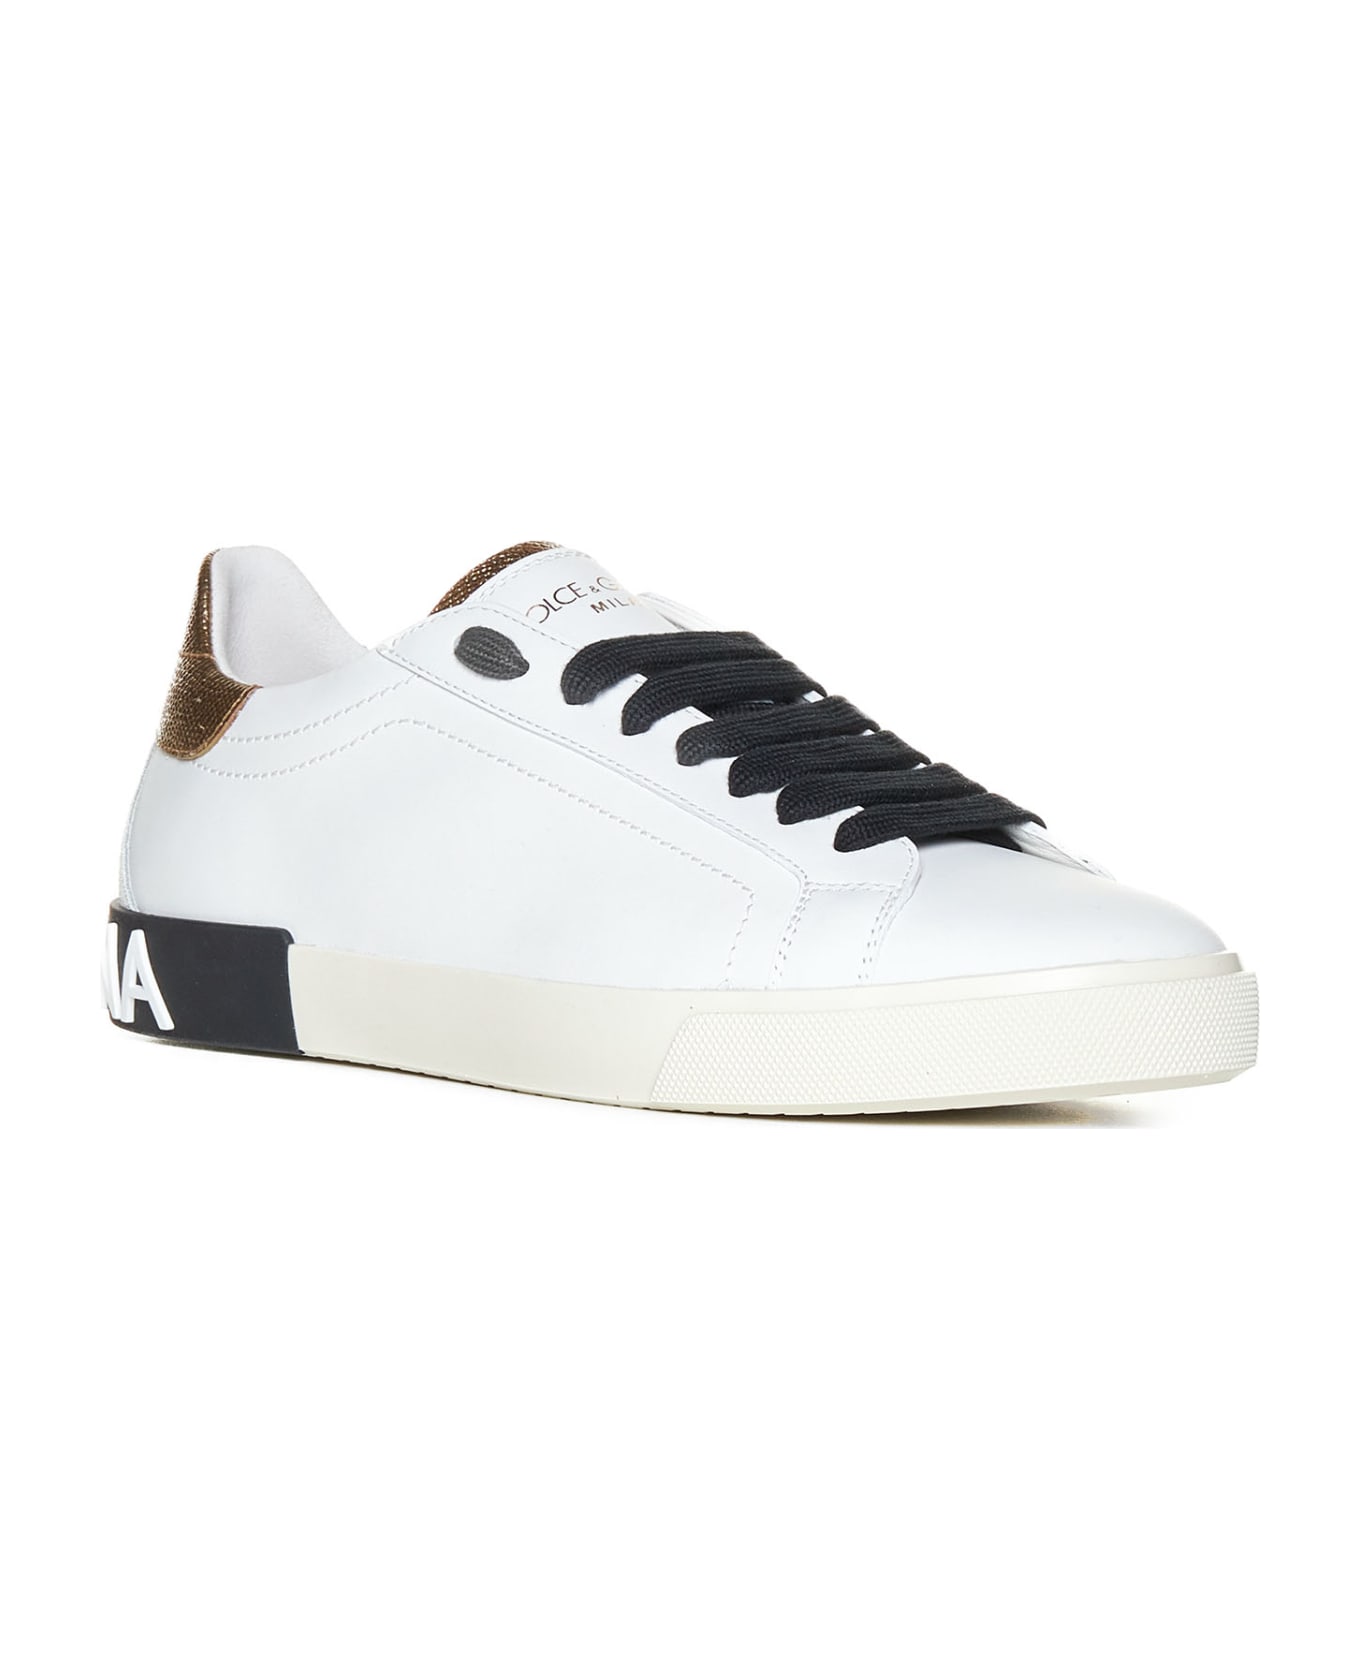 Dolce & Gabbana Portofino Leather Sneakers - White / Gold